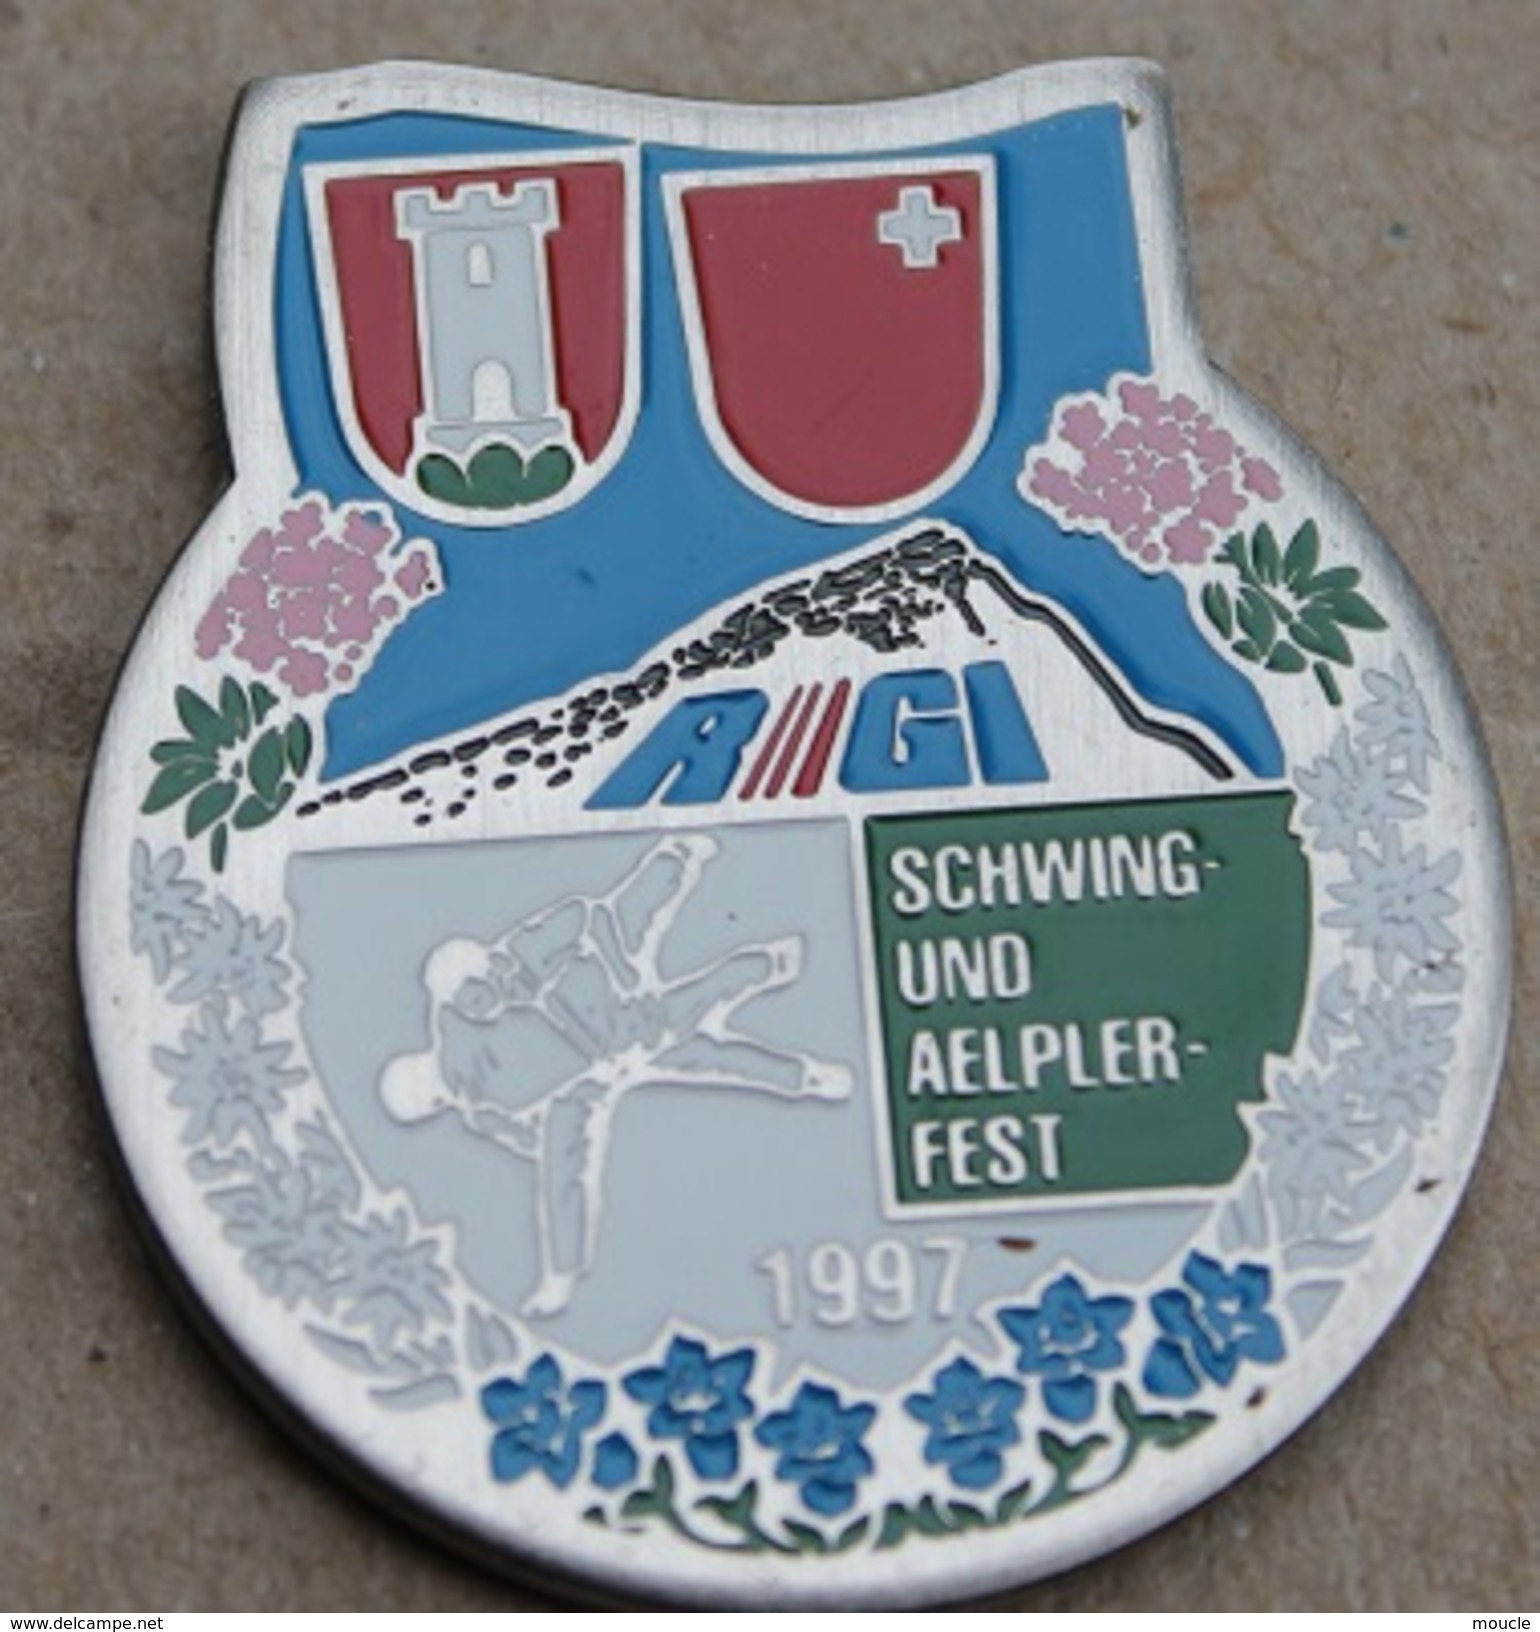 LUTTE SUISSE - SCHWING UND AELPLERFEST 1997 - SUISSE - SCHWEIZ - SWIZTERLAND - RIGI - DRAPEAU CANTON DE SCHWYZ -    (14) - Lotta